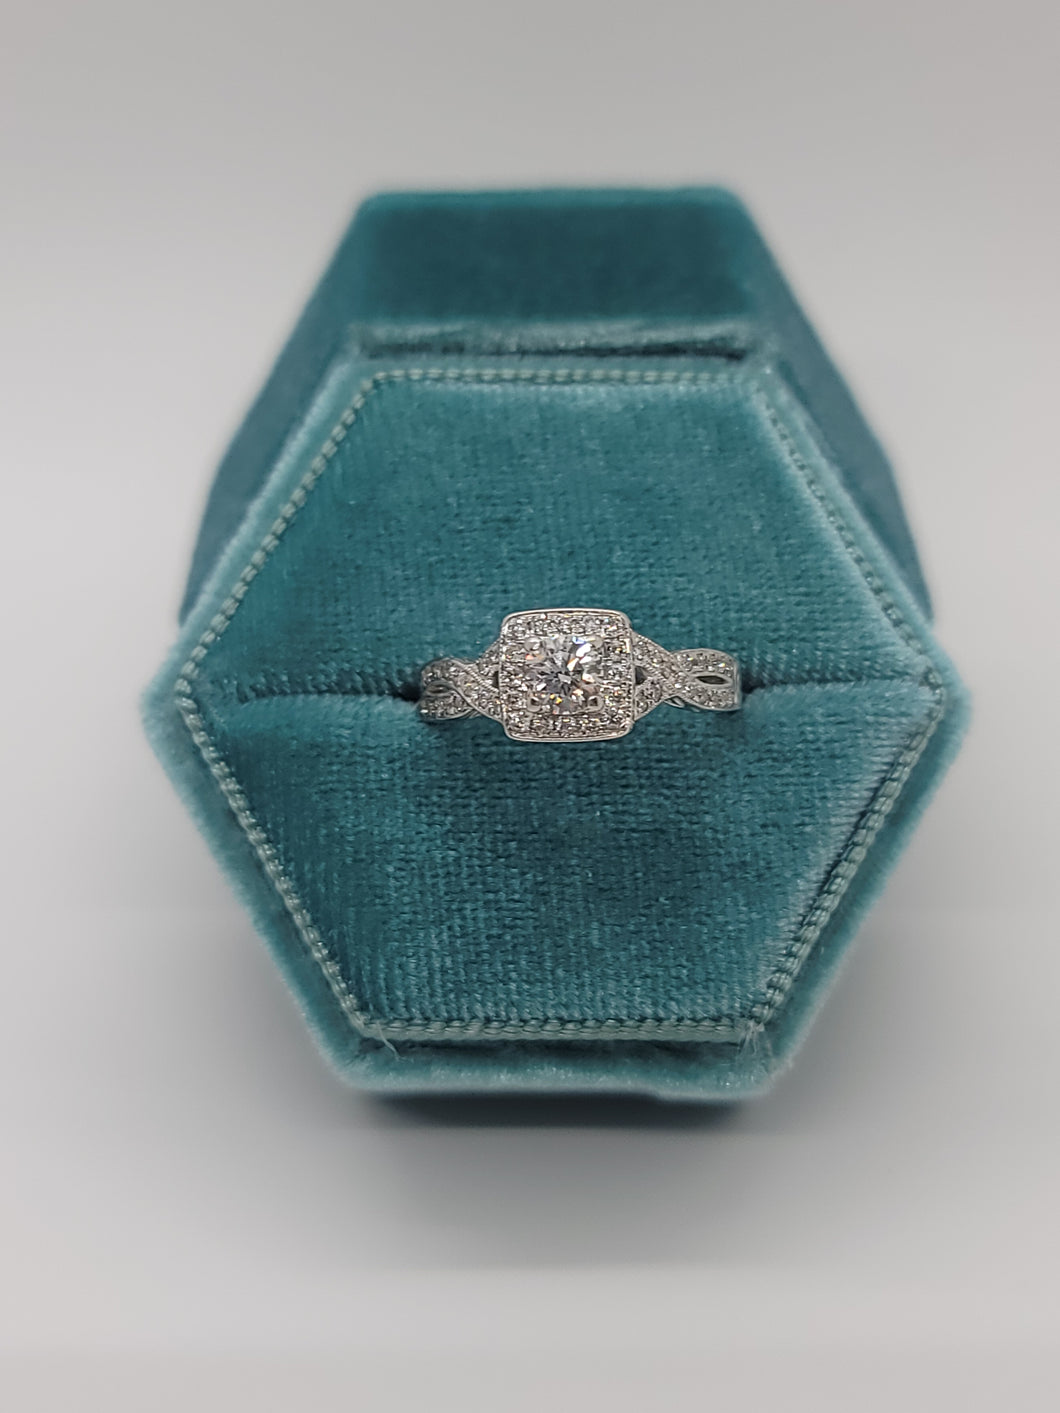 14k white gold Diamond Engagement ring